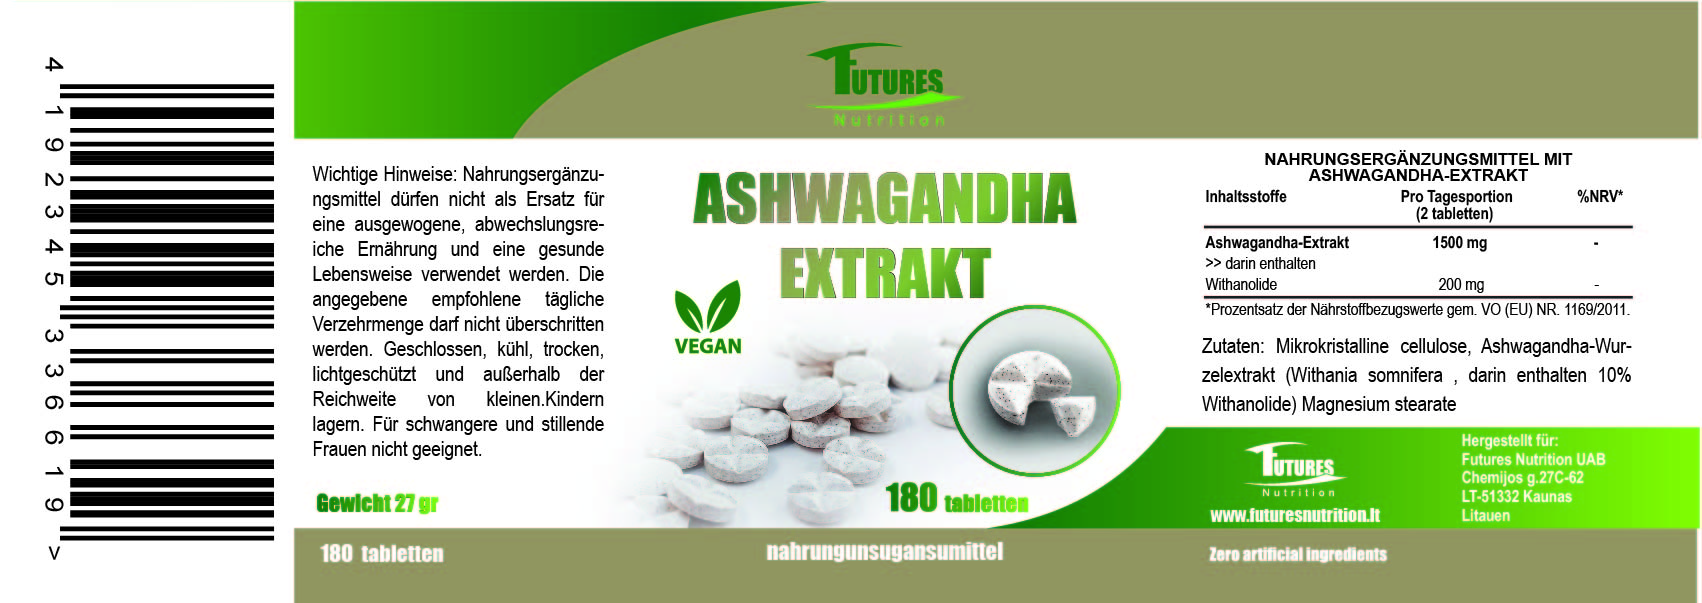 Ashwagandha Extrakt 180 Tabletten - Bewältigen Sie Ihren Stresspegel ganz einfach